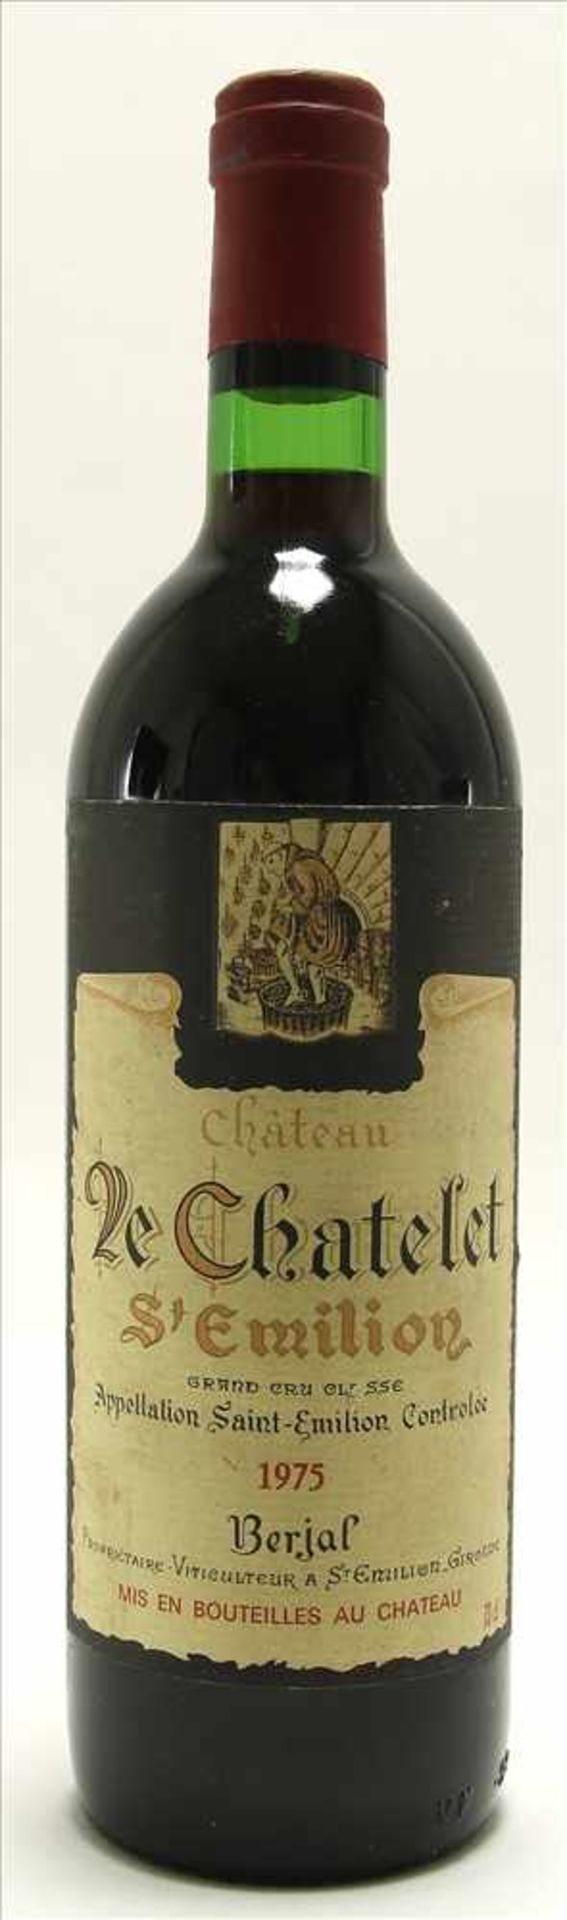 Chateau Le Chatelet 1975Grand Cru Classé. 0,73 Liter Flasche. Füllstand Anfang Hals wie